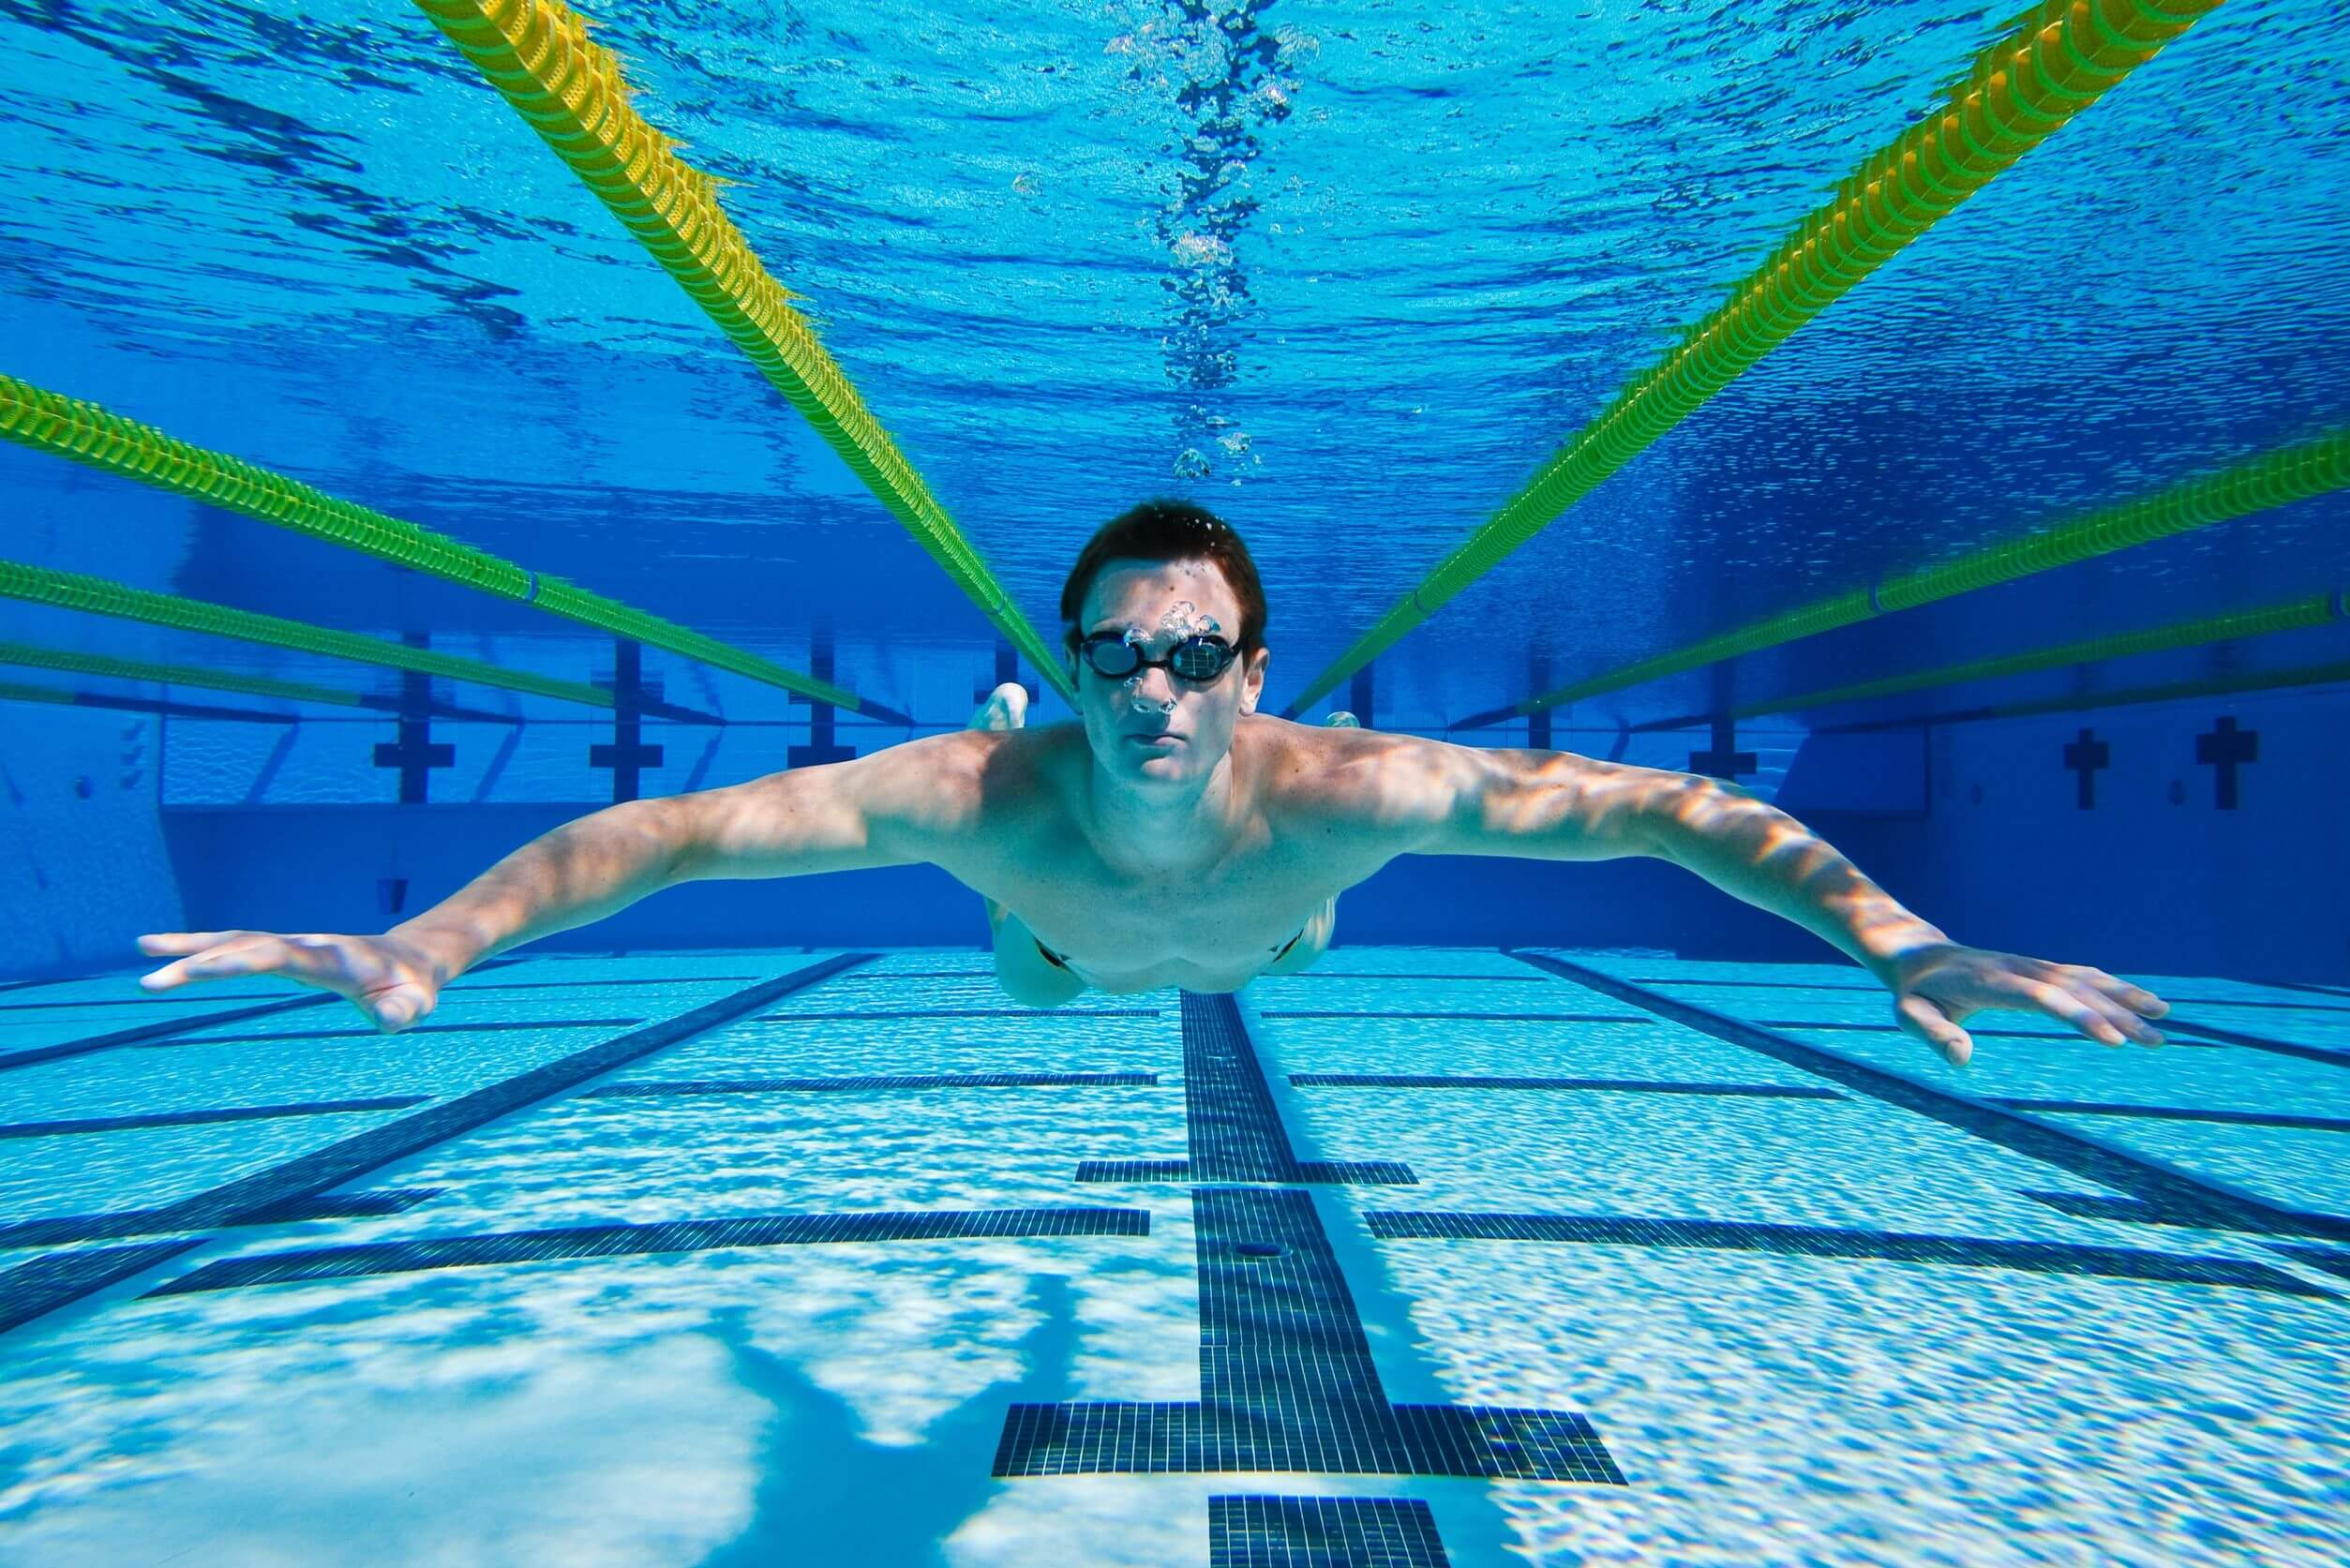 Nuotare per migliorare la resistenza fisica.